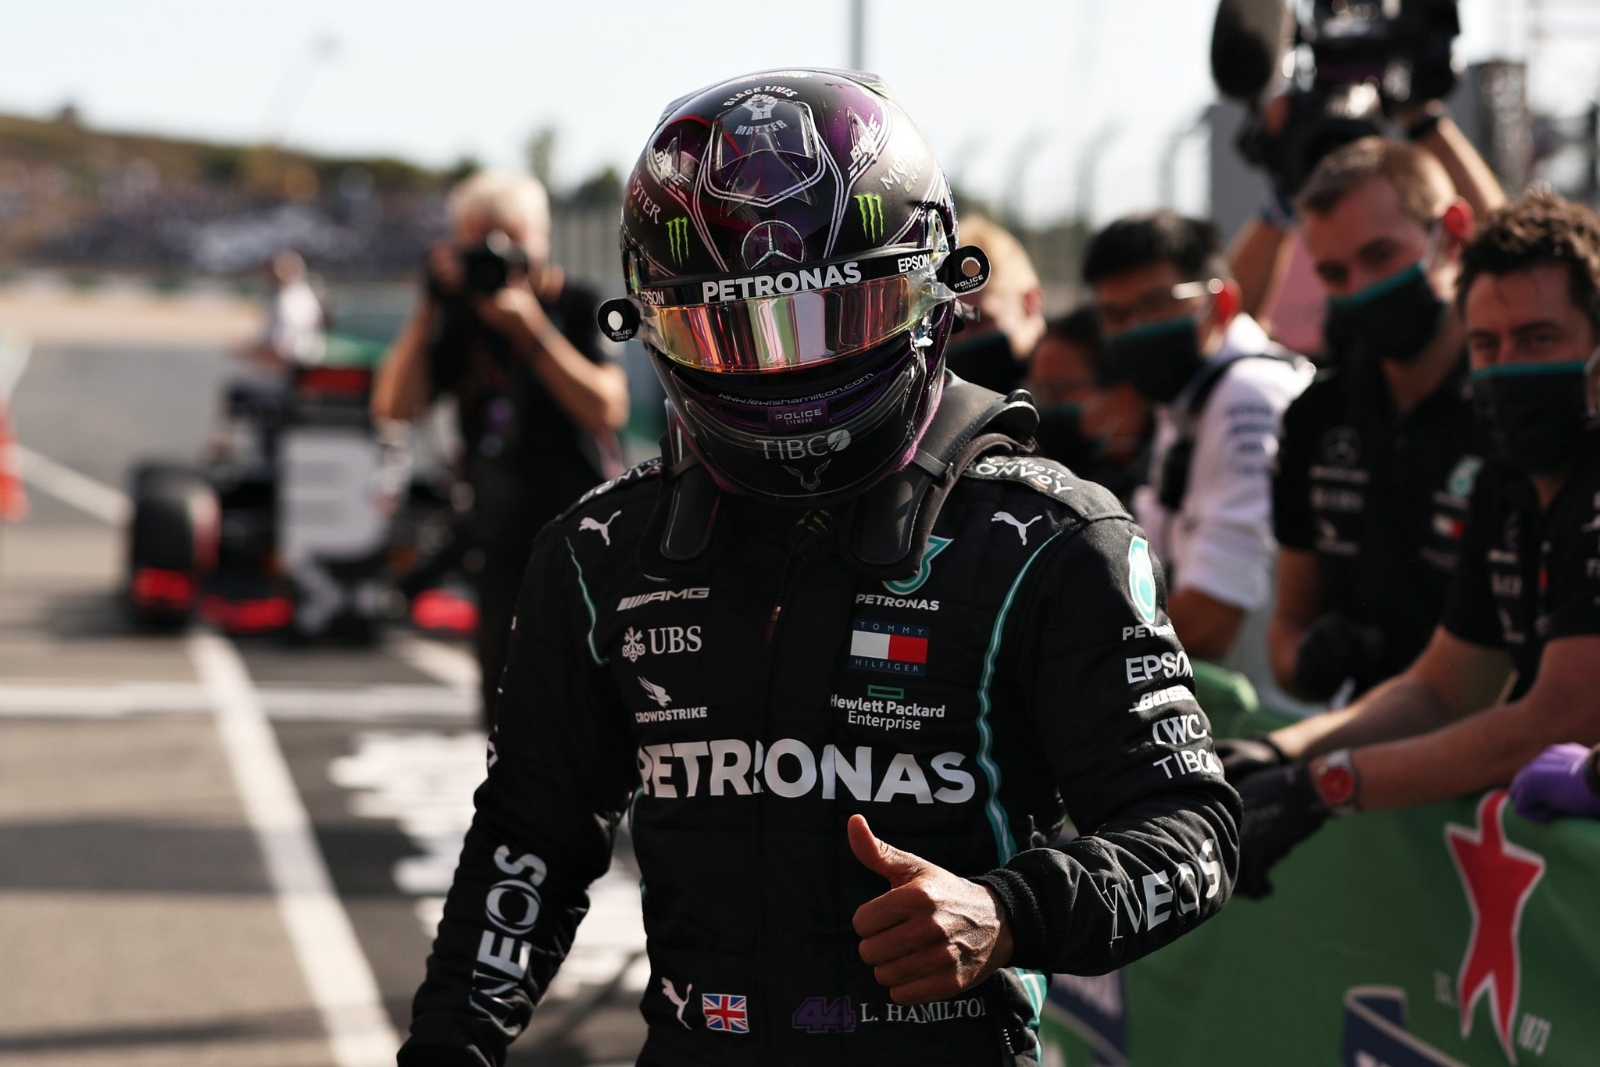 Lewis Hamilton se convierte en el piloto con más triunfos en F1